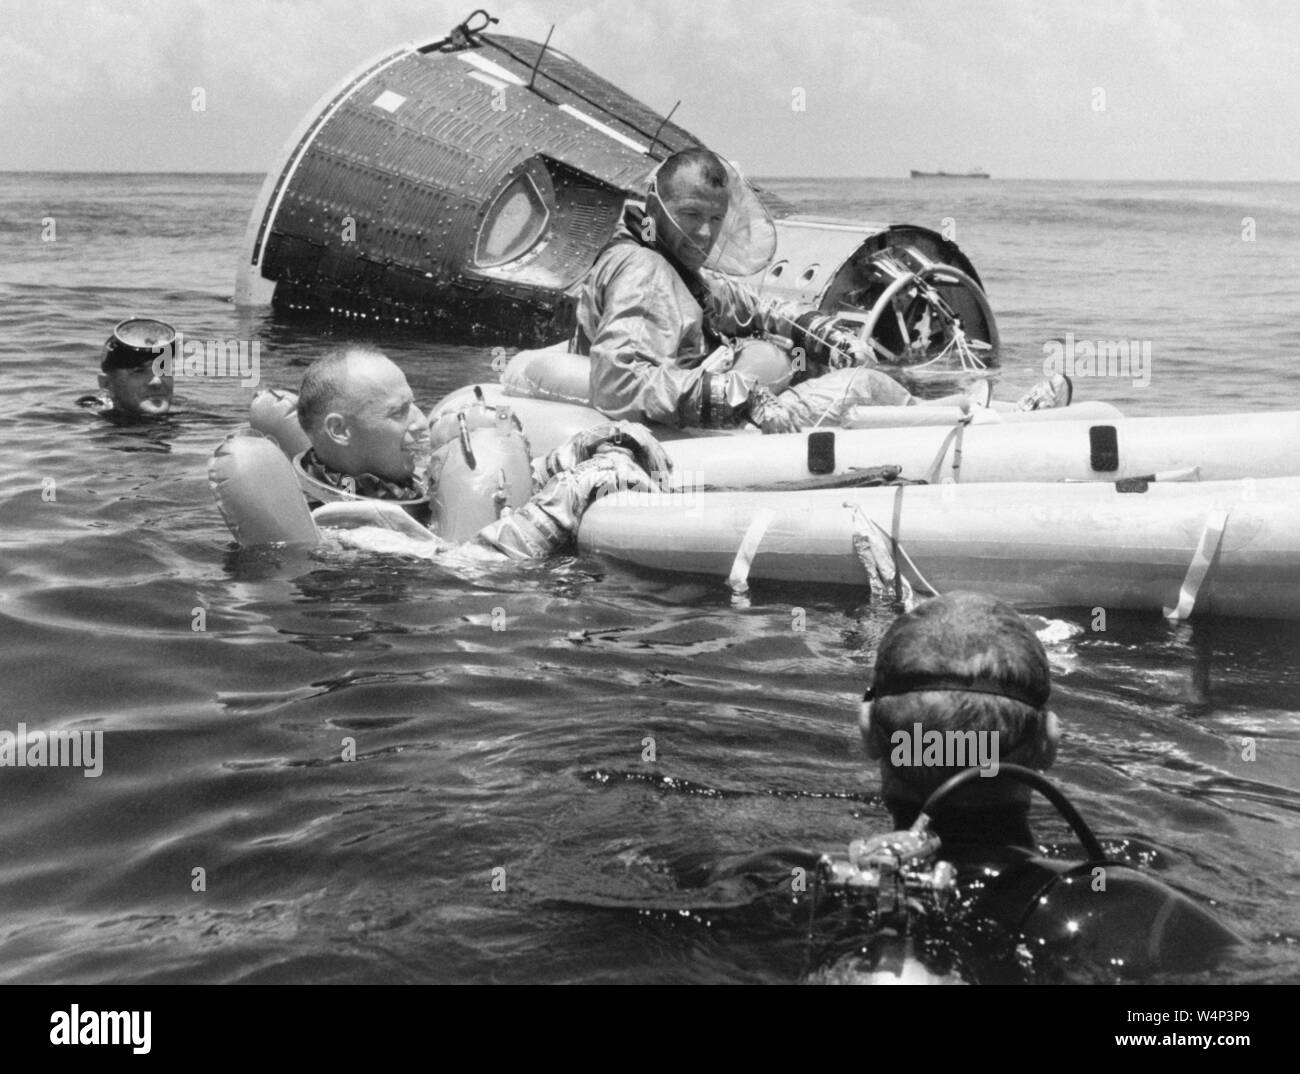 La pratica della formazione di sopravvivenza del primo equipaggio per la Gemini V volo spaziale nel Golfo del Messico, compresi gli astronauti Charles Conrad Jr e L. Gordon Cooper Jr, luglio 21, 1965. Immagine cortesia Nazionale Aeronautica e Spaziale Administration (NASA). () Foto Stock